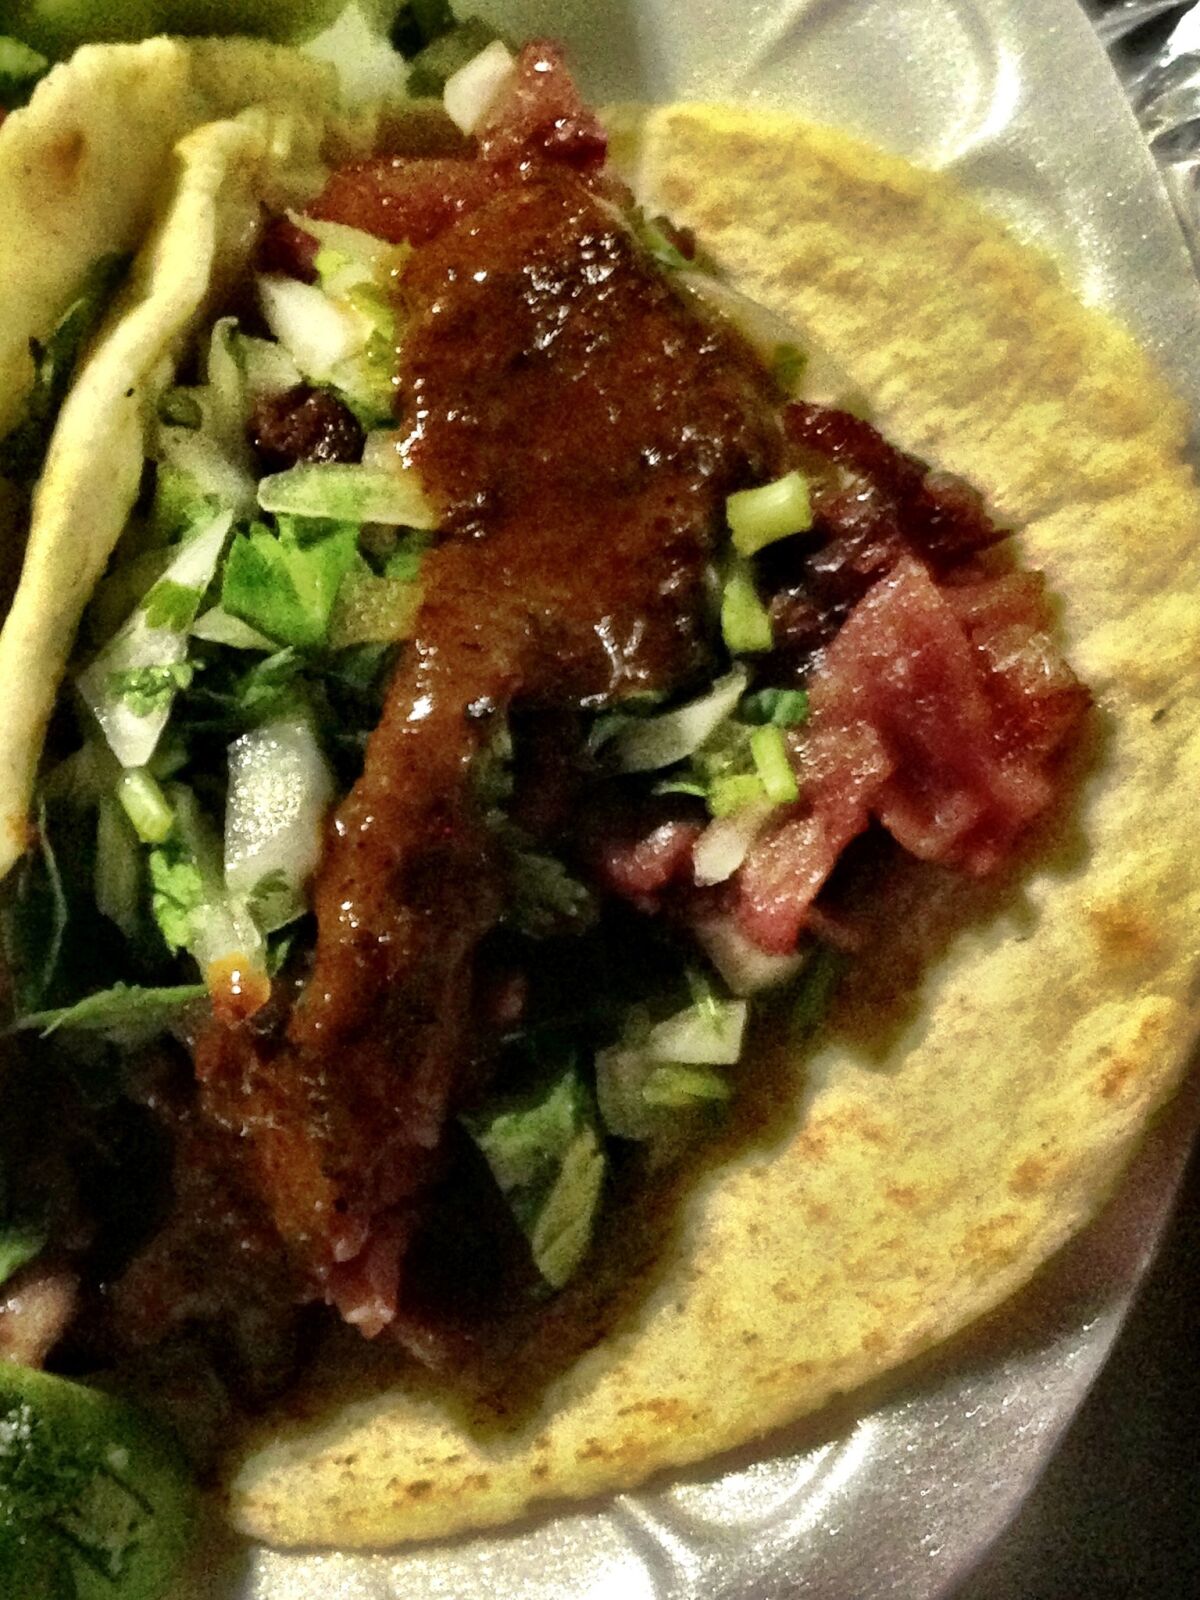 Spicy tacos de trompas from L.A.'s La Tehuana truck.